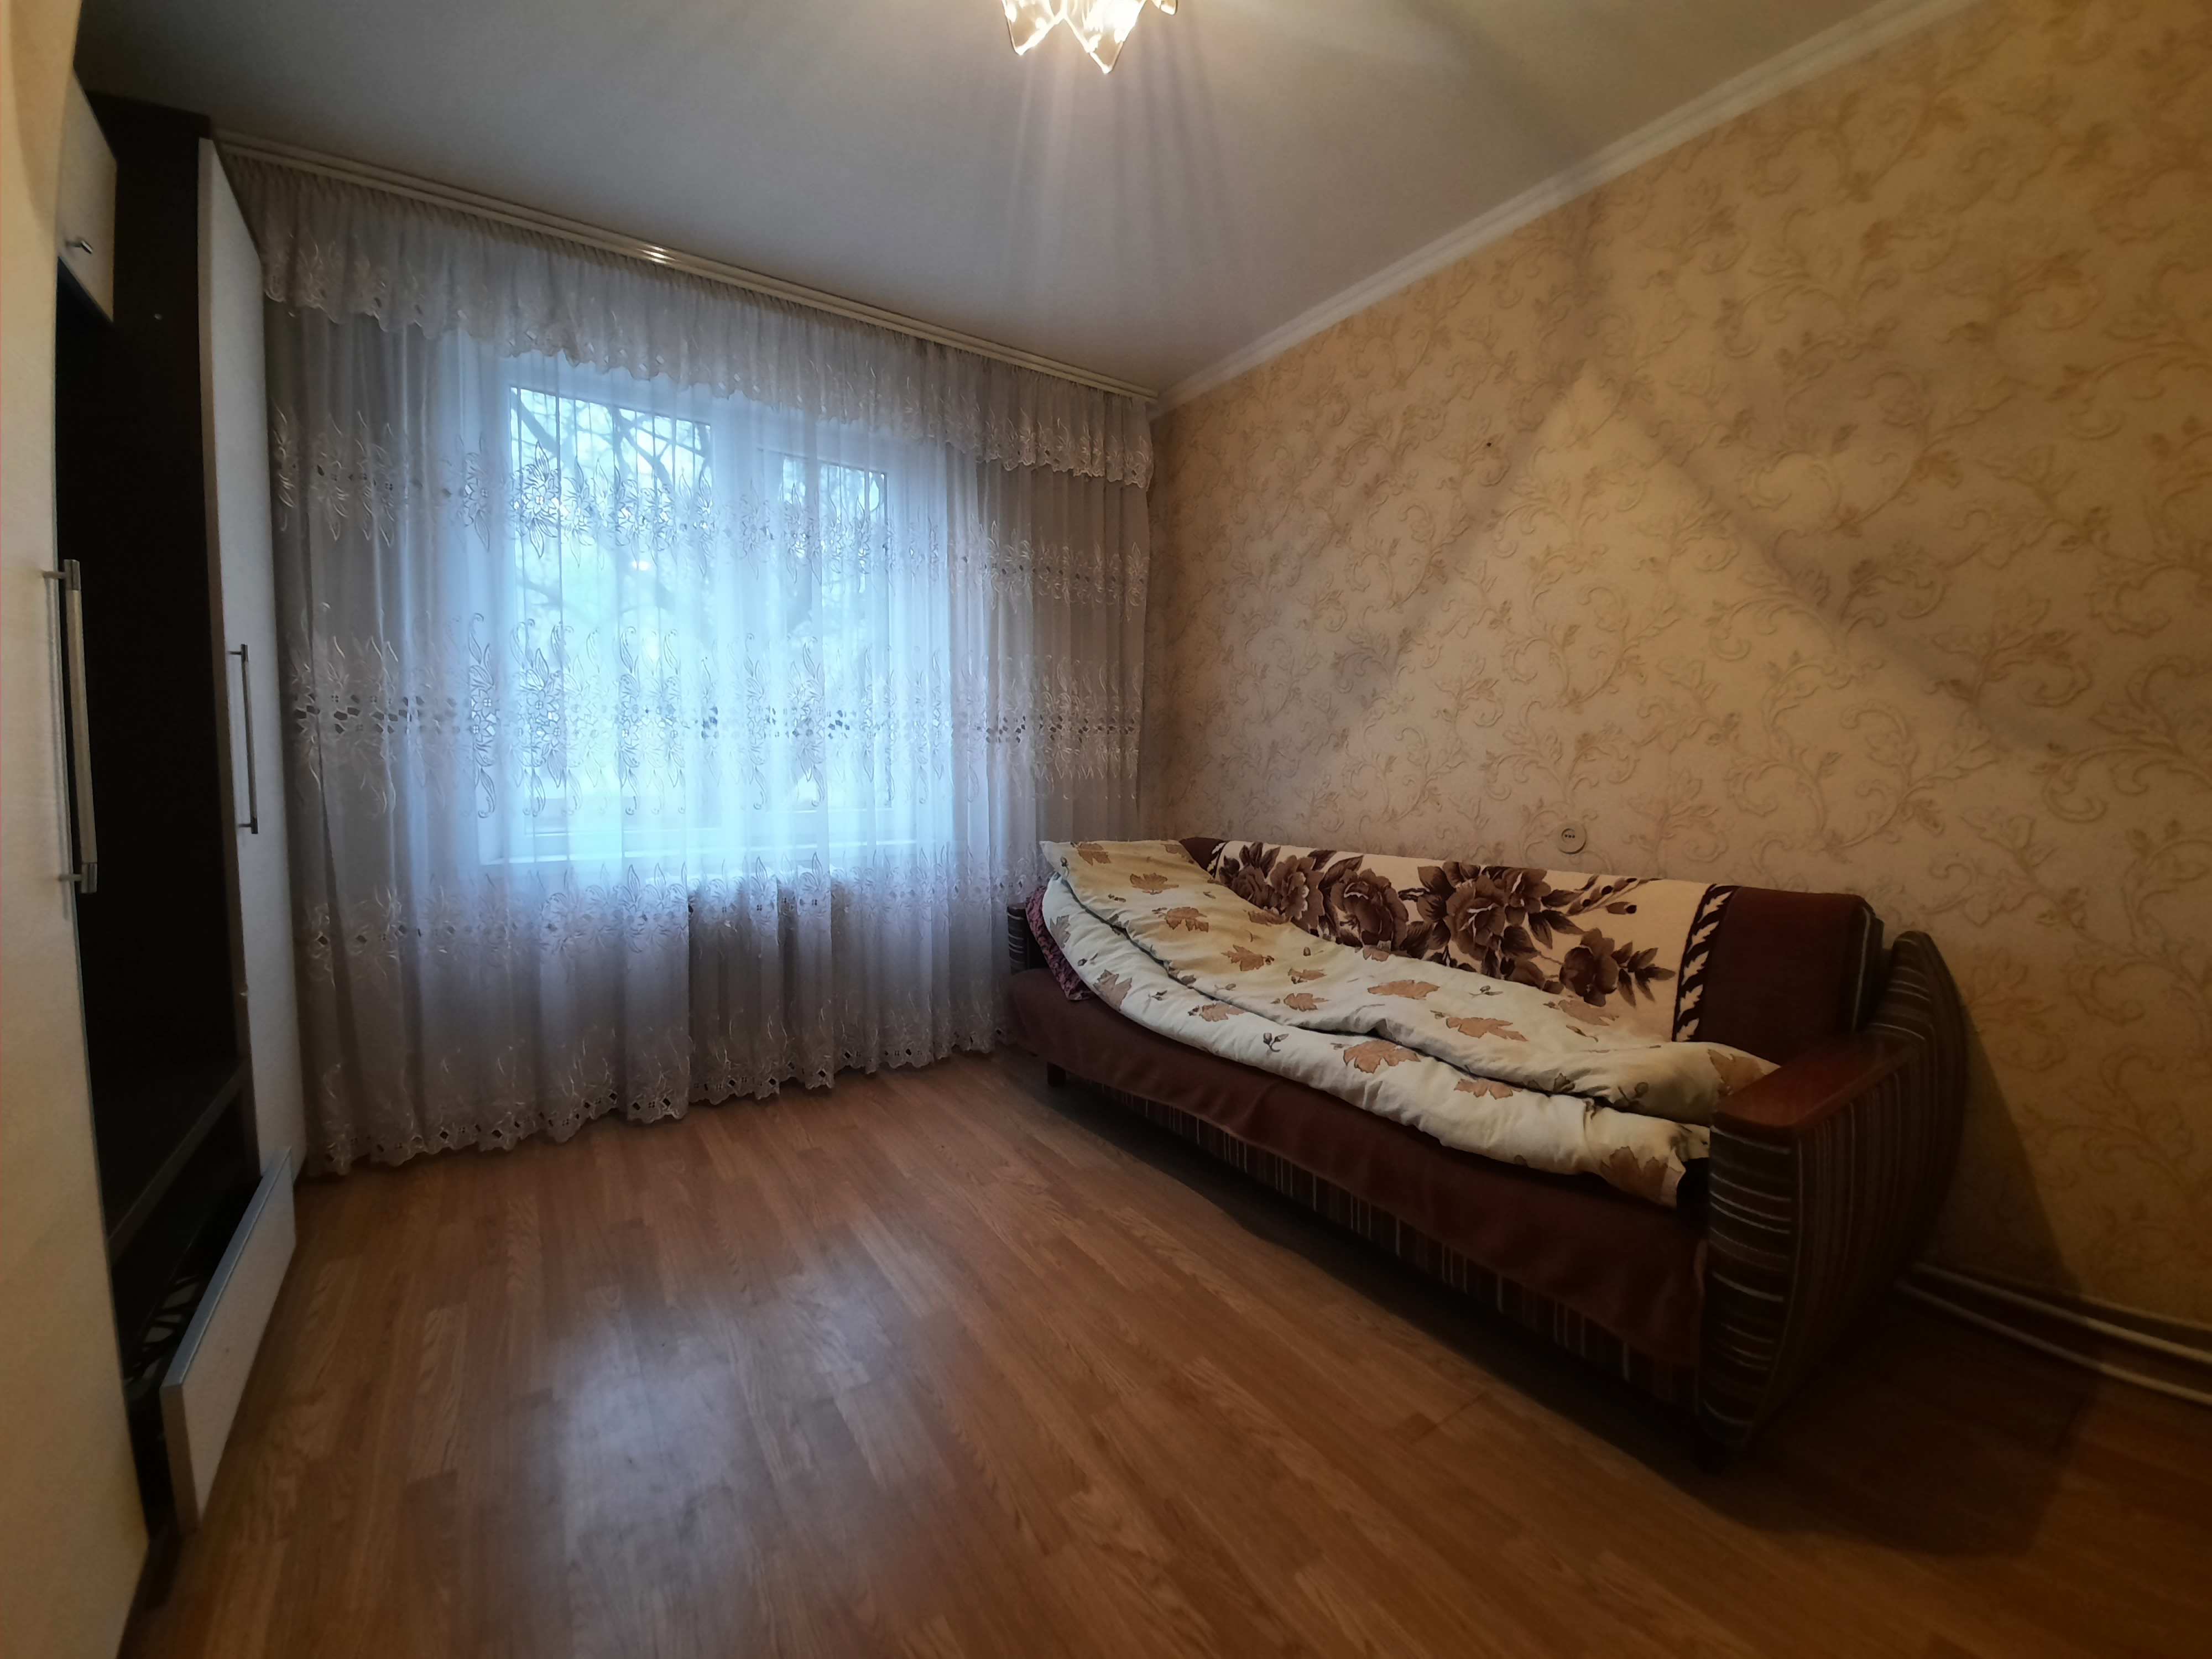 VÂNDUT, Apartament de vânzare, mun.Chișinău, sec.Rîșcani, Seria 135, 3 odăi+Anexă, 77 m2, et.1